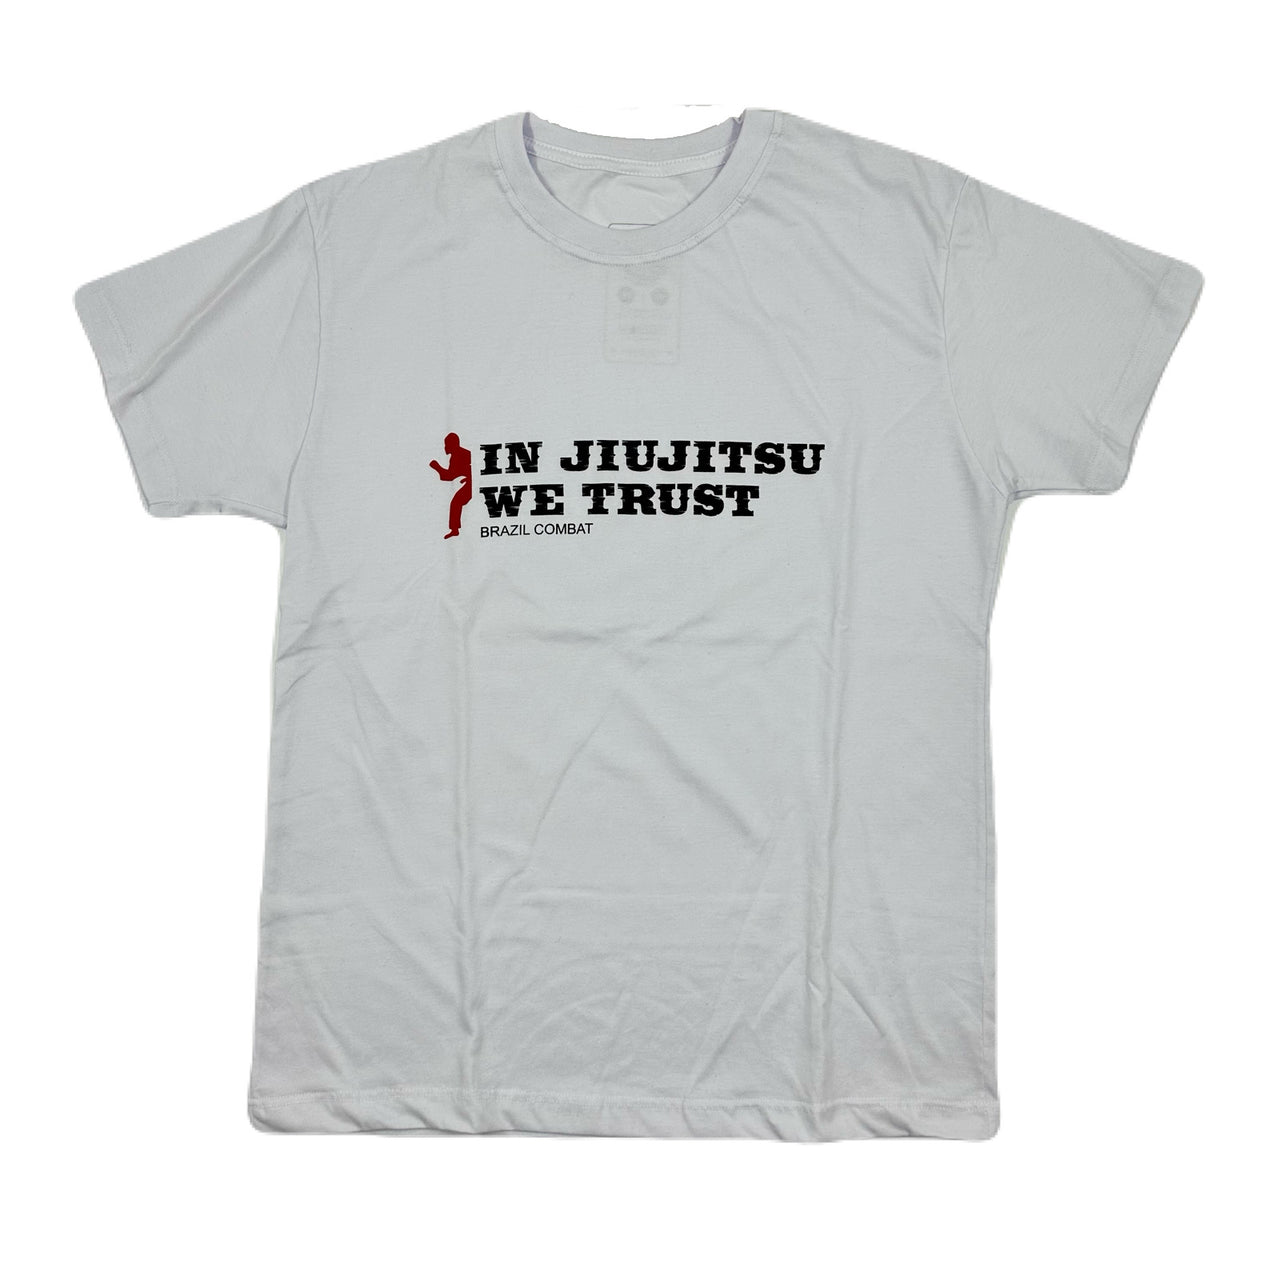 In Jiu-Jitsu we trust T-shirt